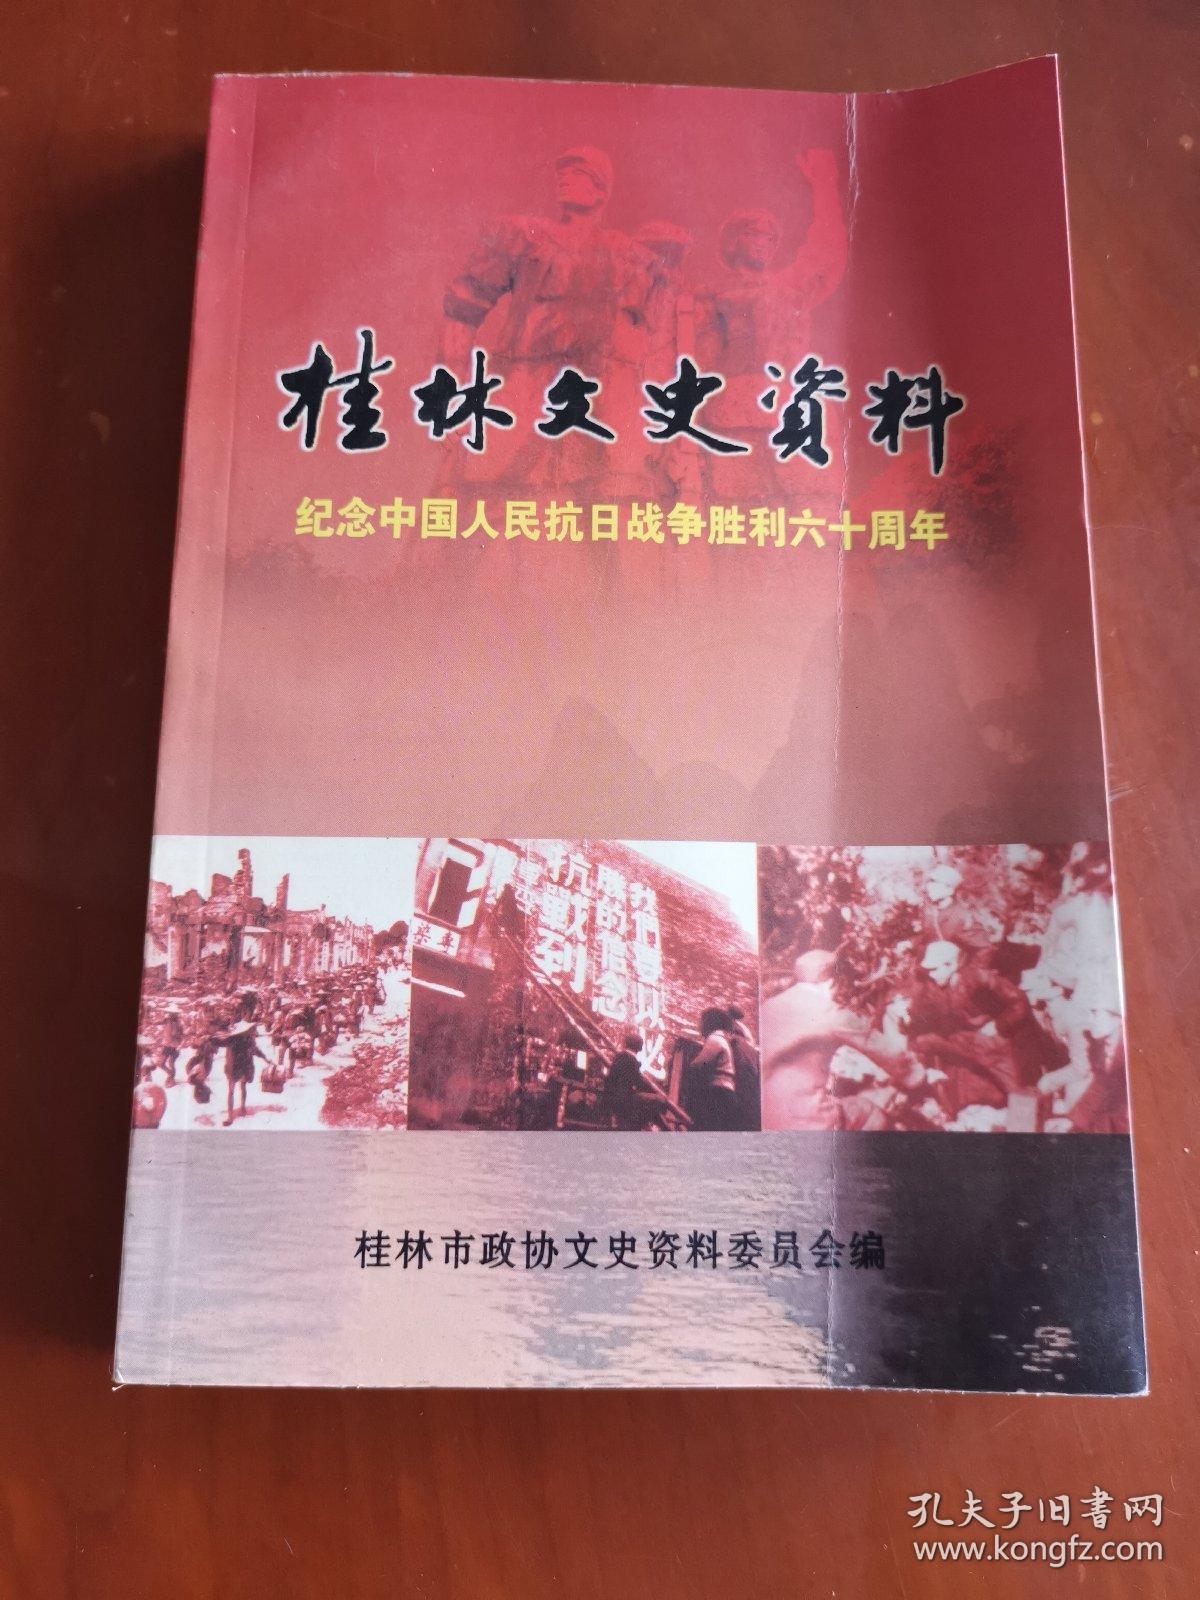 桂林文史资料 第四十九辑 纪念中国人民抗日战争胜利六十周年